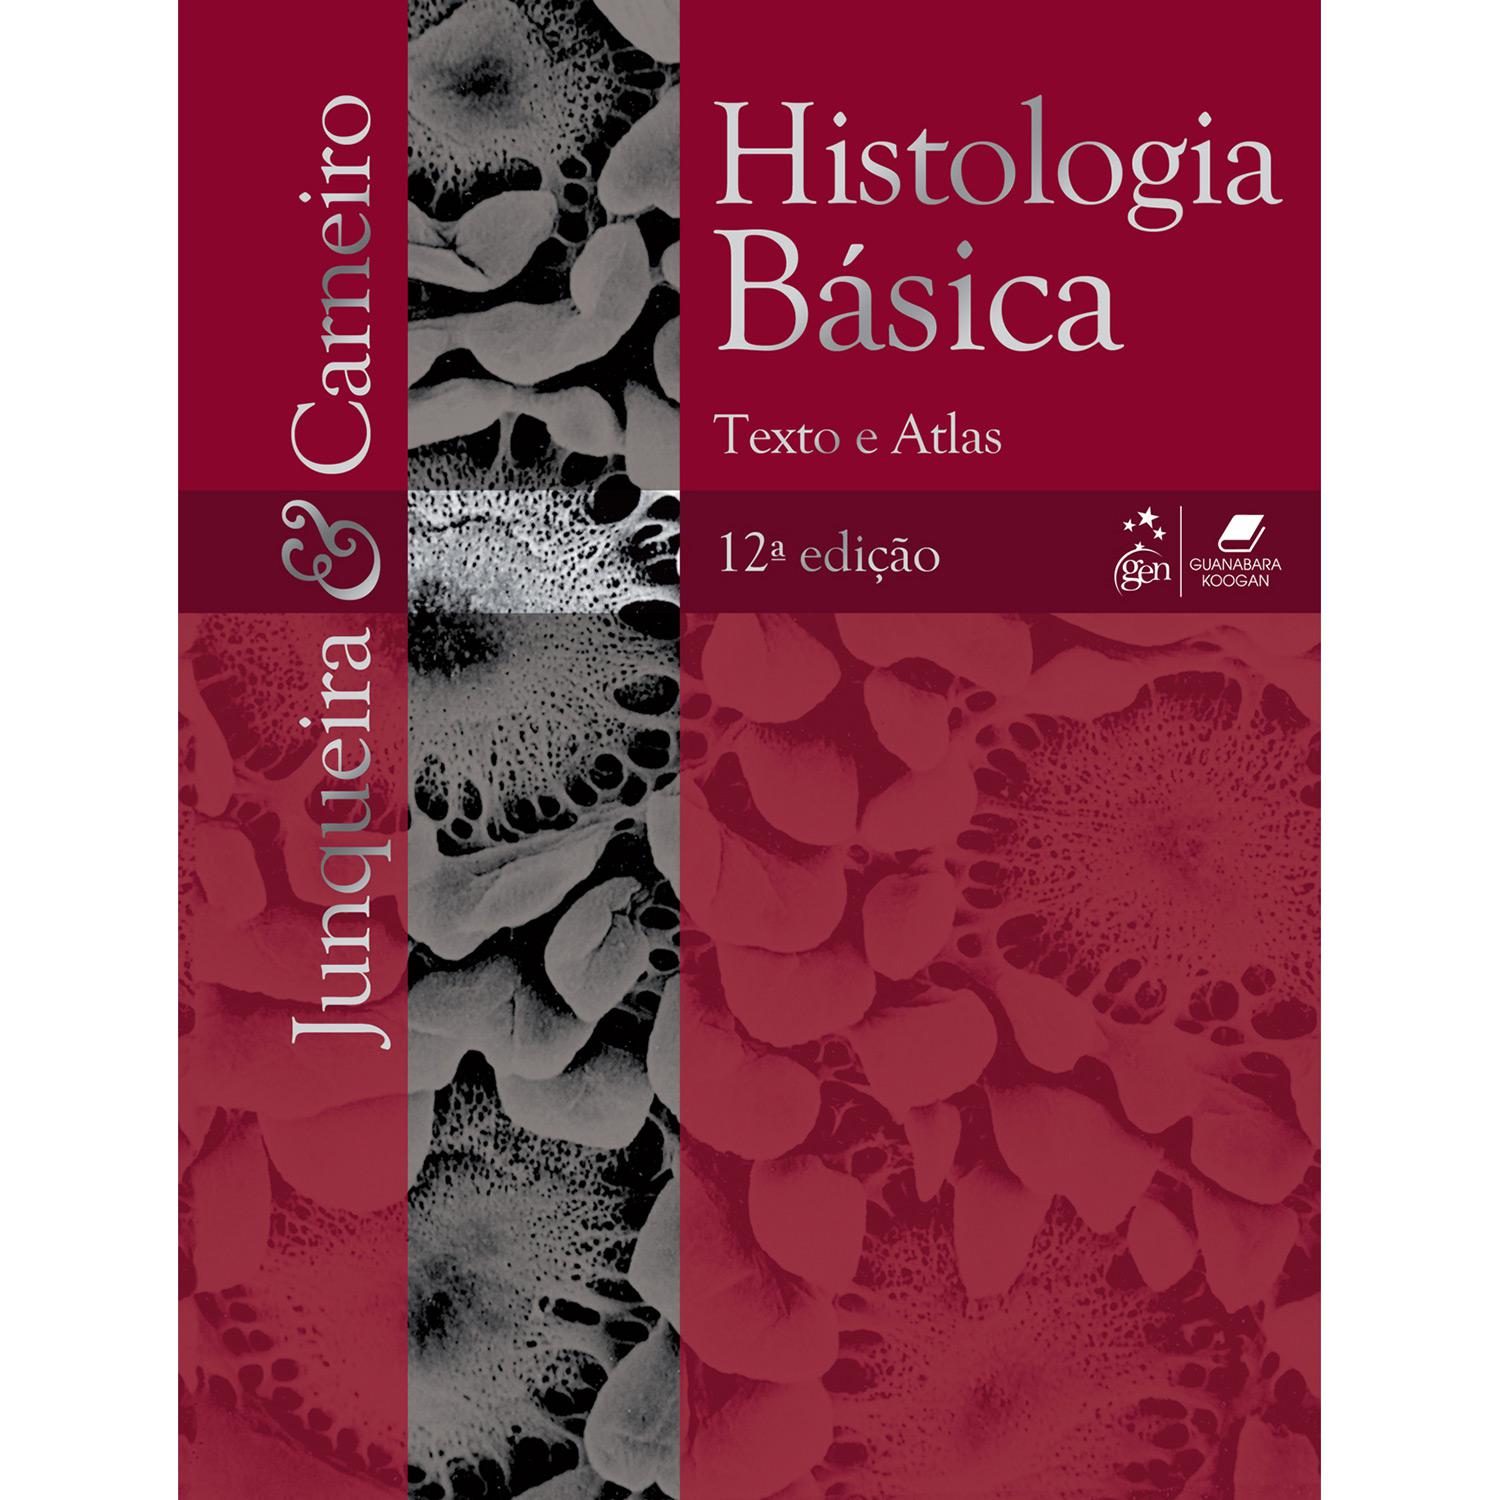 Livro - Histologia Básica: Textos e Atlas é bom? Vale a pena?